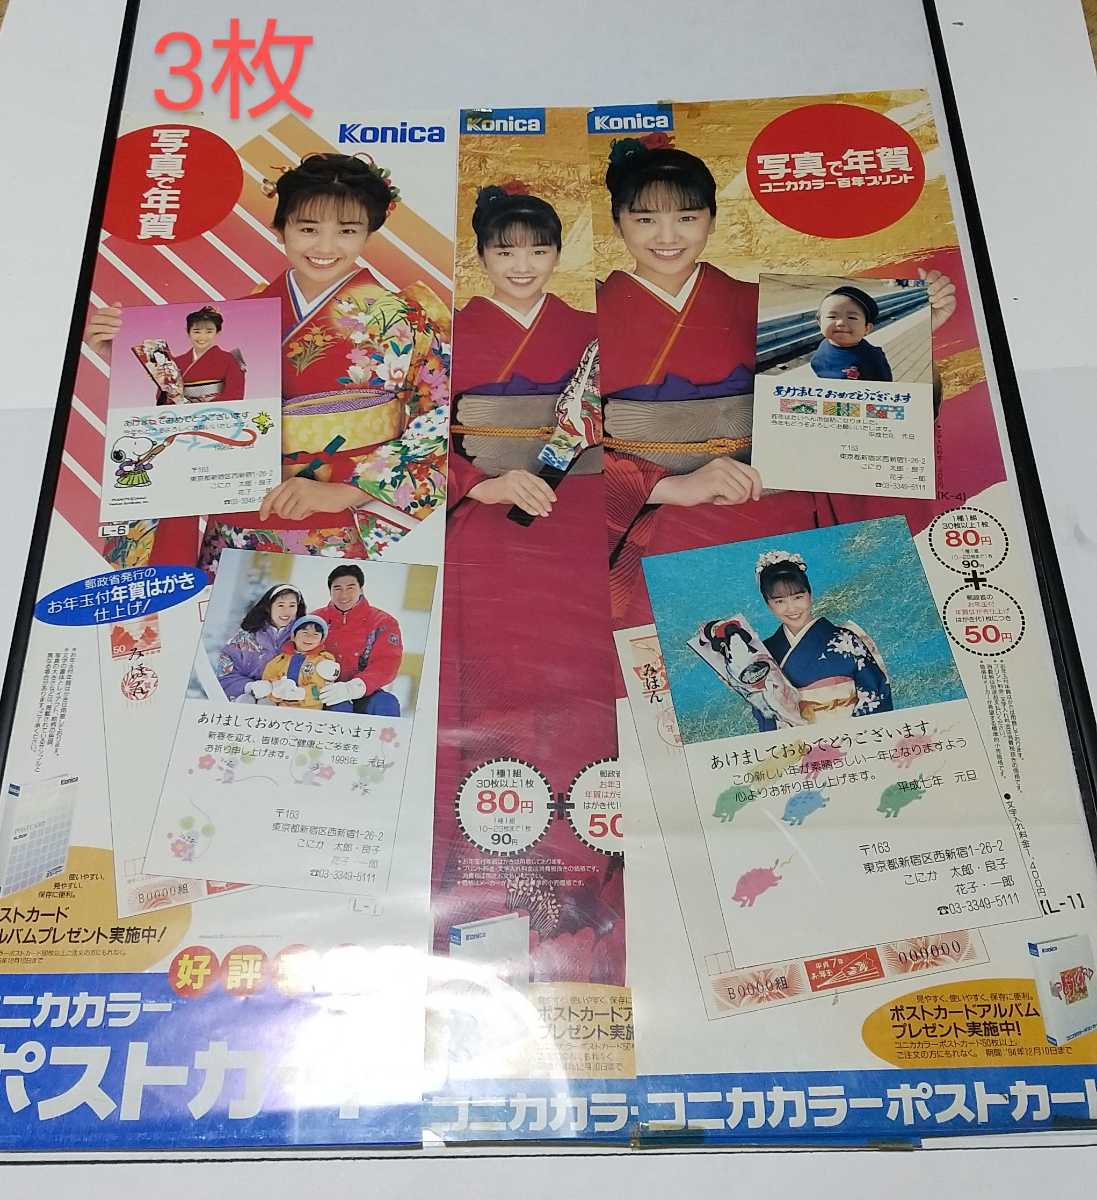 हिकारू निशिदा / कोनिका फोटो के साथ नए साल की शुभकामनाएं कोनिका रंग पोस्टकार्ड बिक्री प्रचार मिनी पोस्टर 7 का सेट बिक्री के लिए नहीं है, को, हिकारू निशिदा, अन्य